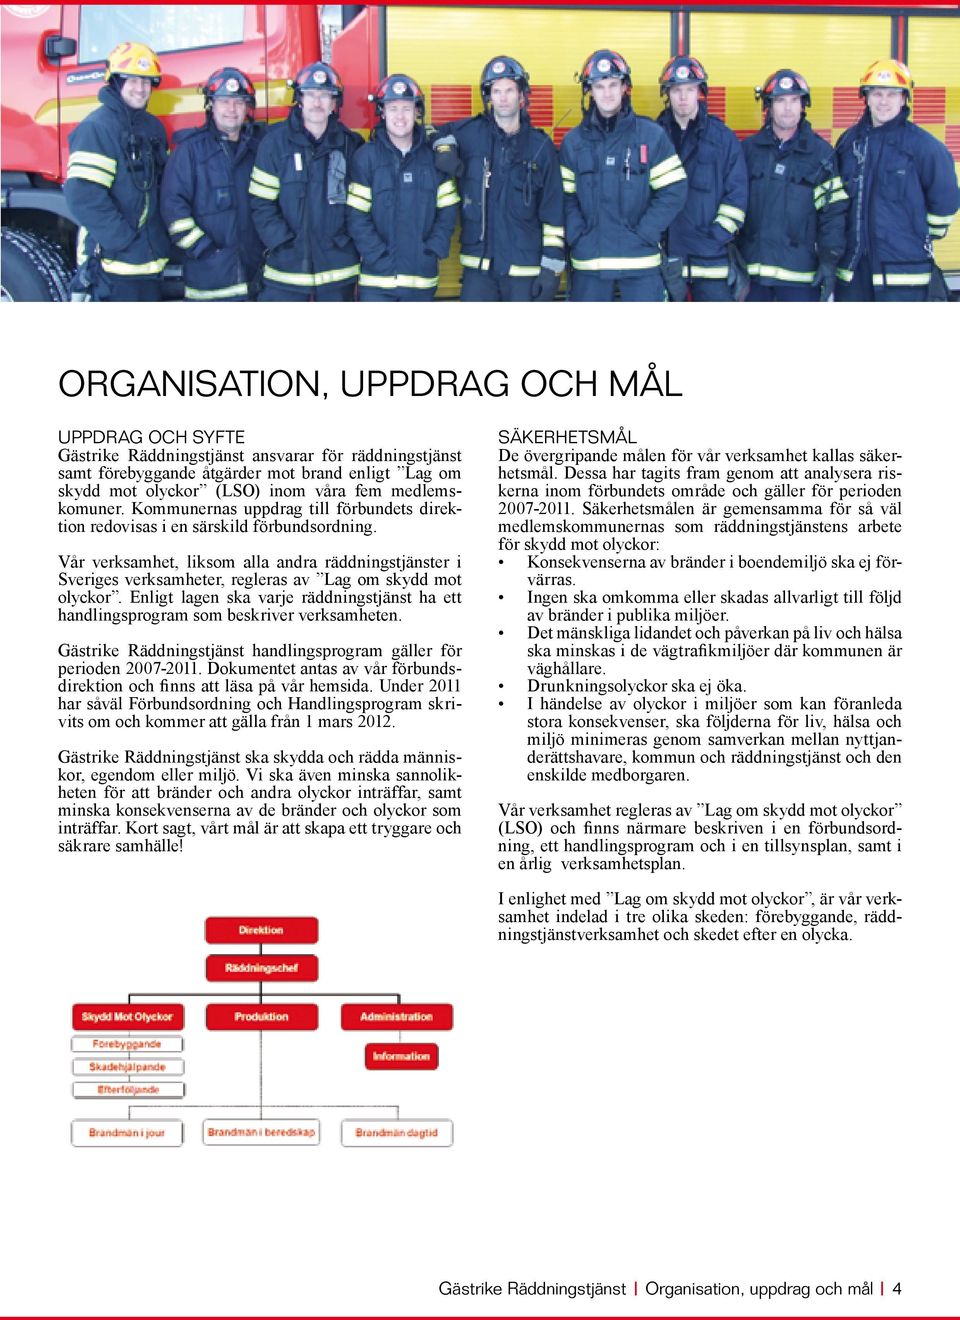 Vår verksamhet, liksom alla andra räddningstjänster i Sveriges verksamheter, regleras av Lag om skydd mot olyckor.